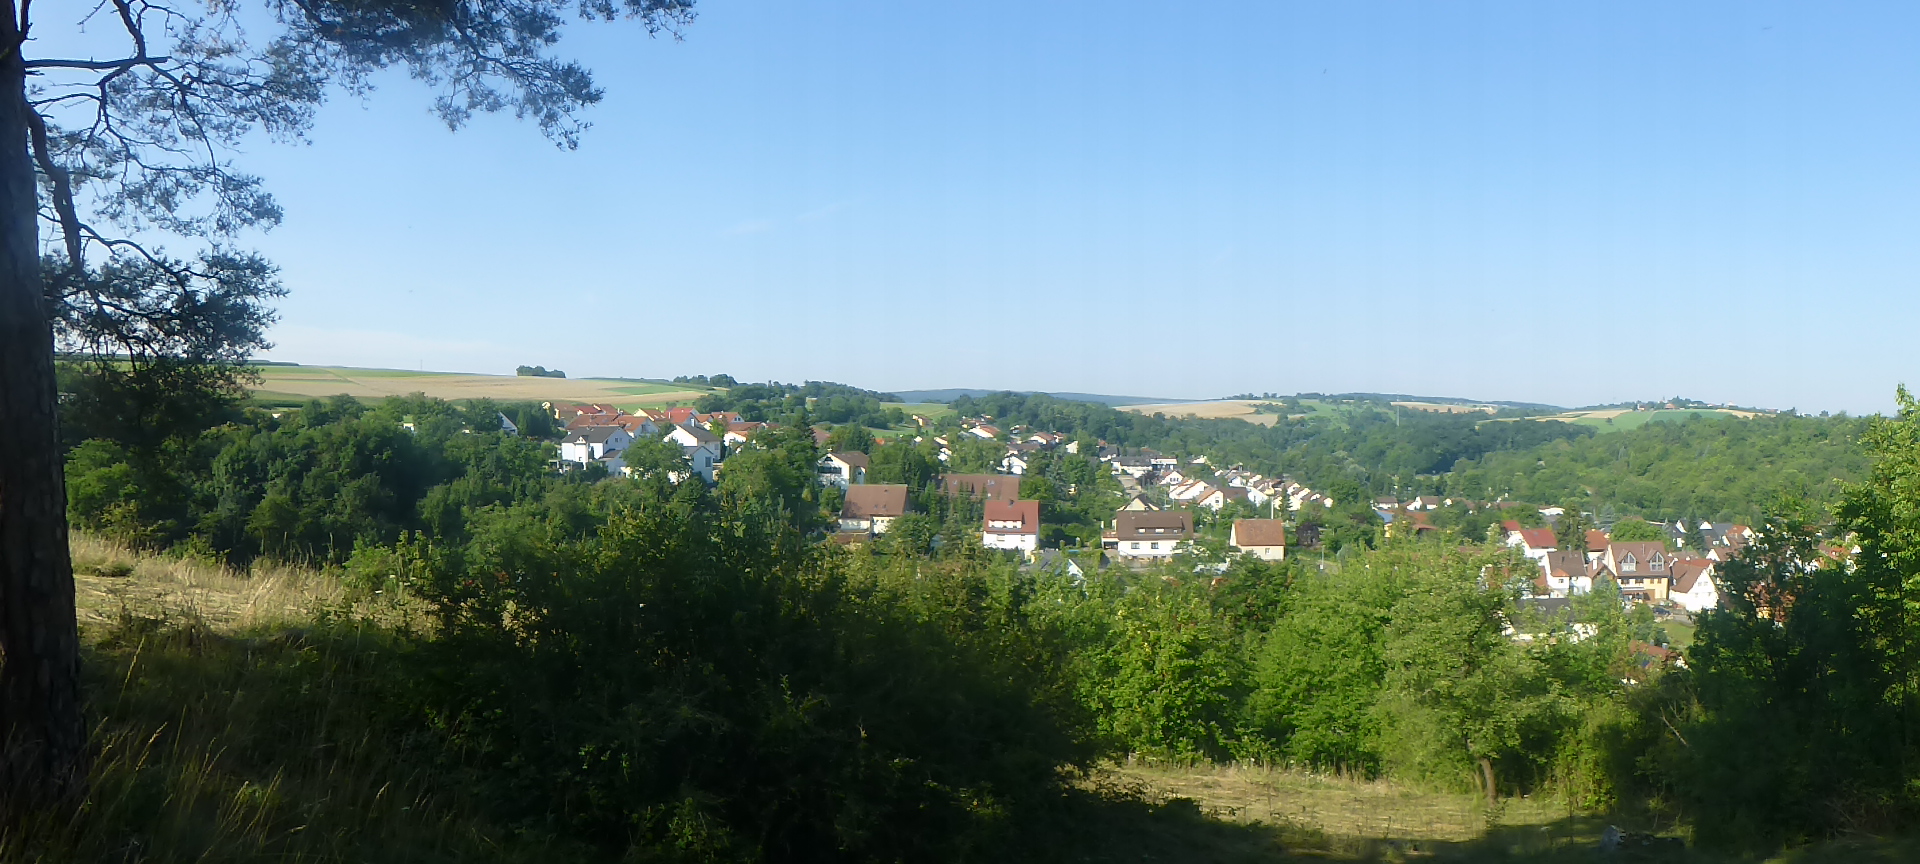 Panoramaaufnahme von Vaihingen-Riet